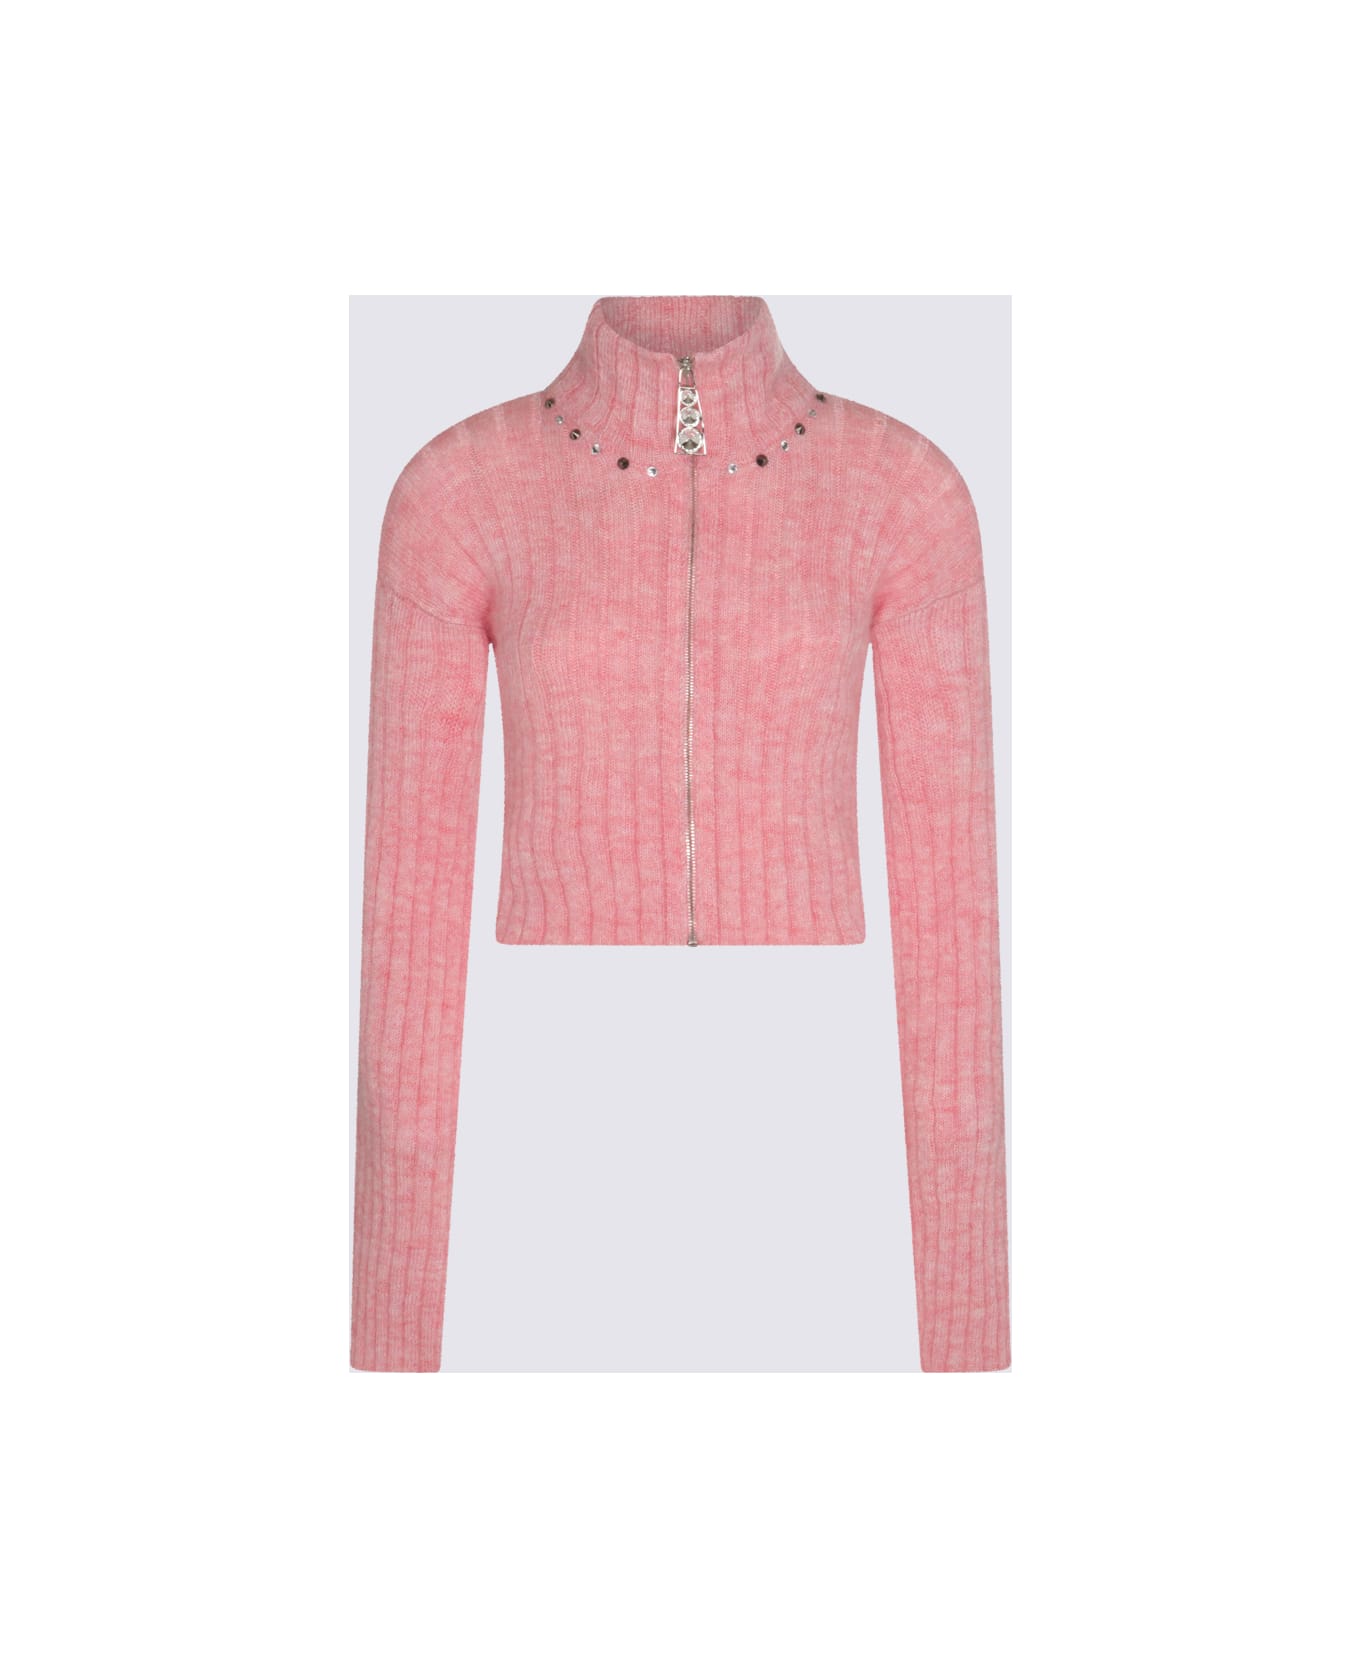 Alessandra Rich Pink Wool Blend Jumper - PINK MELANGE